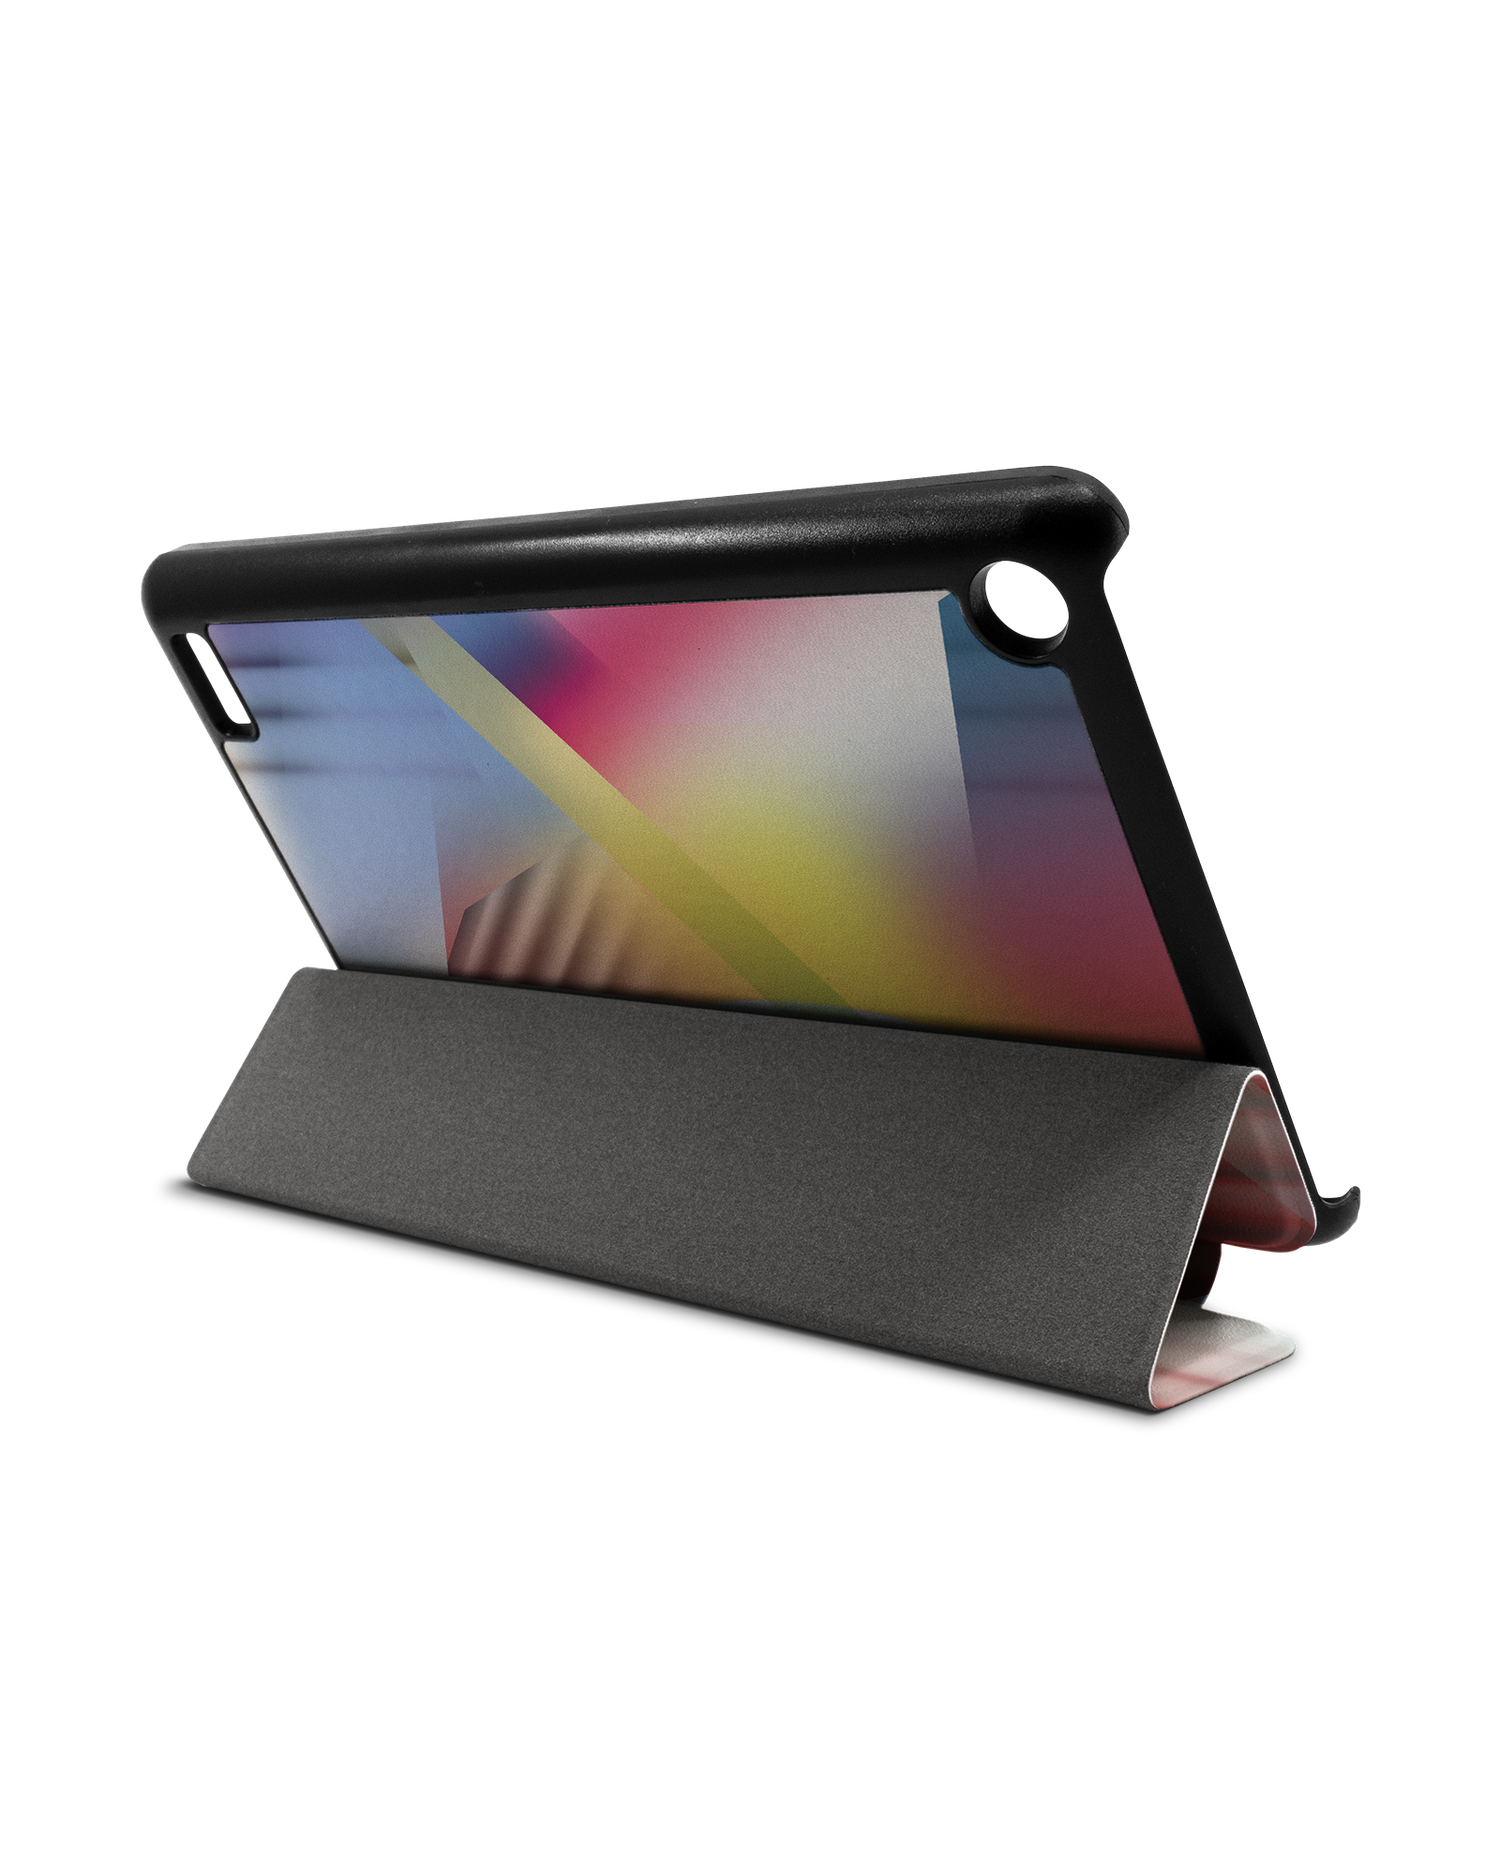 Later Eighties Tablet Smart Case für Amazon Fire 7: Aufgestellt im Querformat